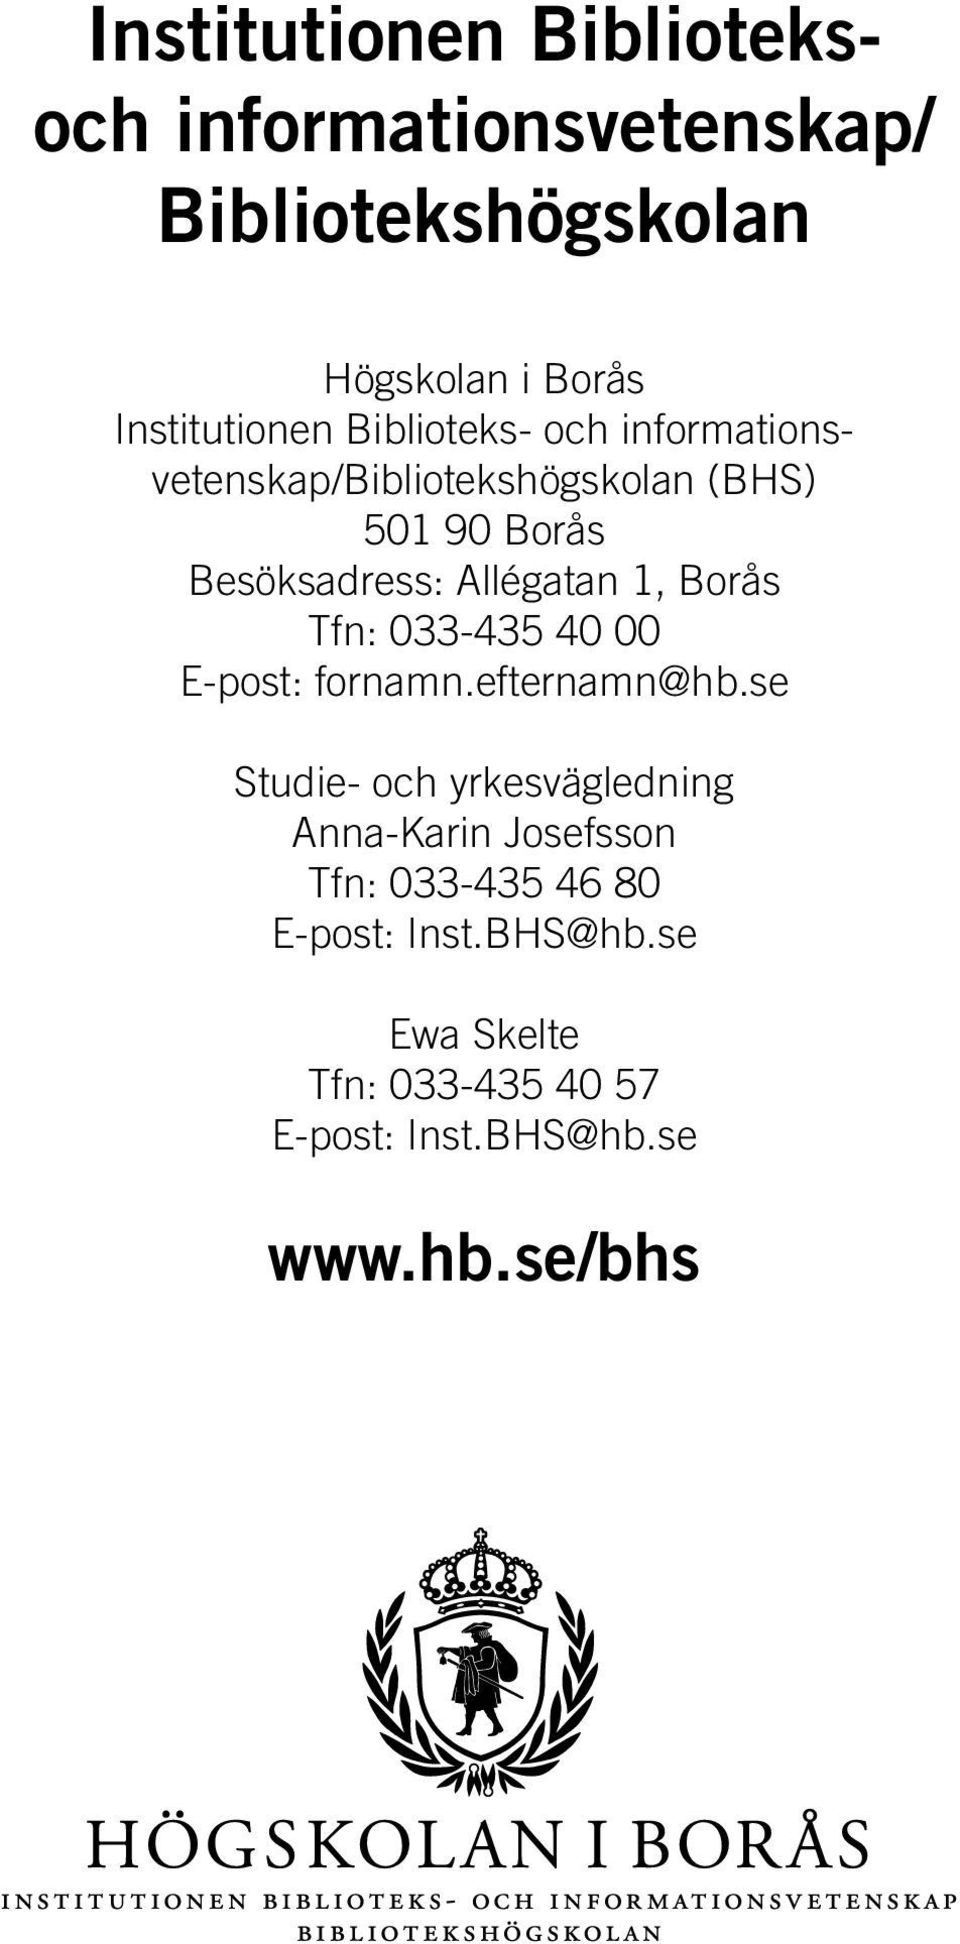 Borås Tfn: 033-435 40 00 E-post: fornamn.efternamn@hb.